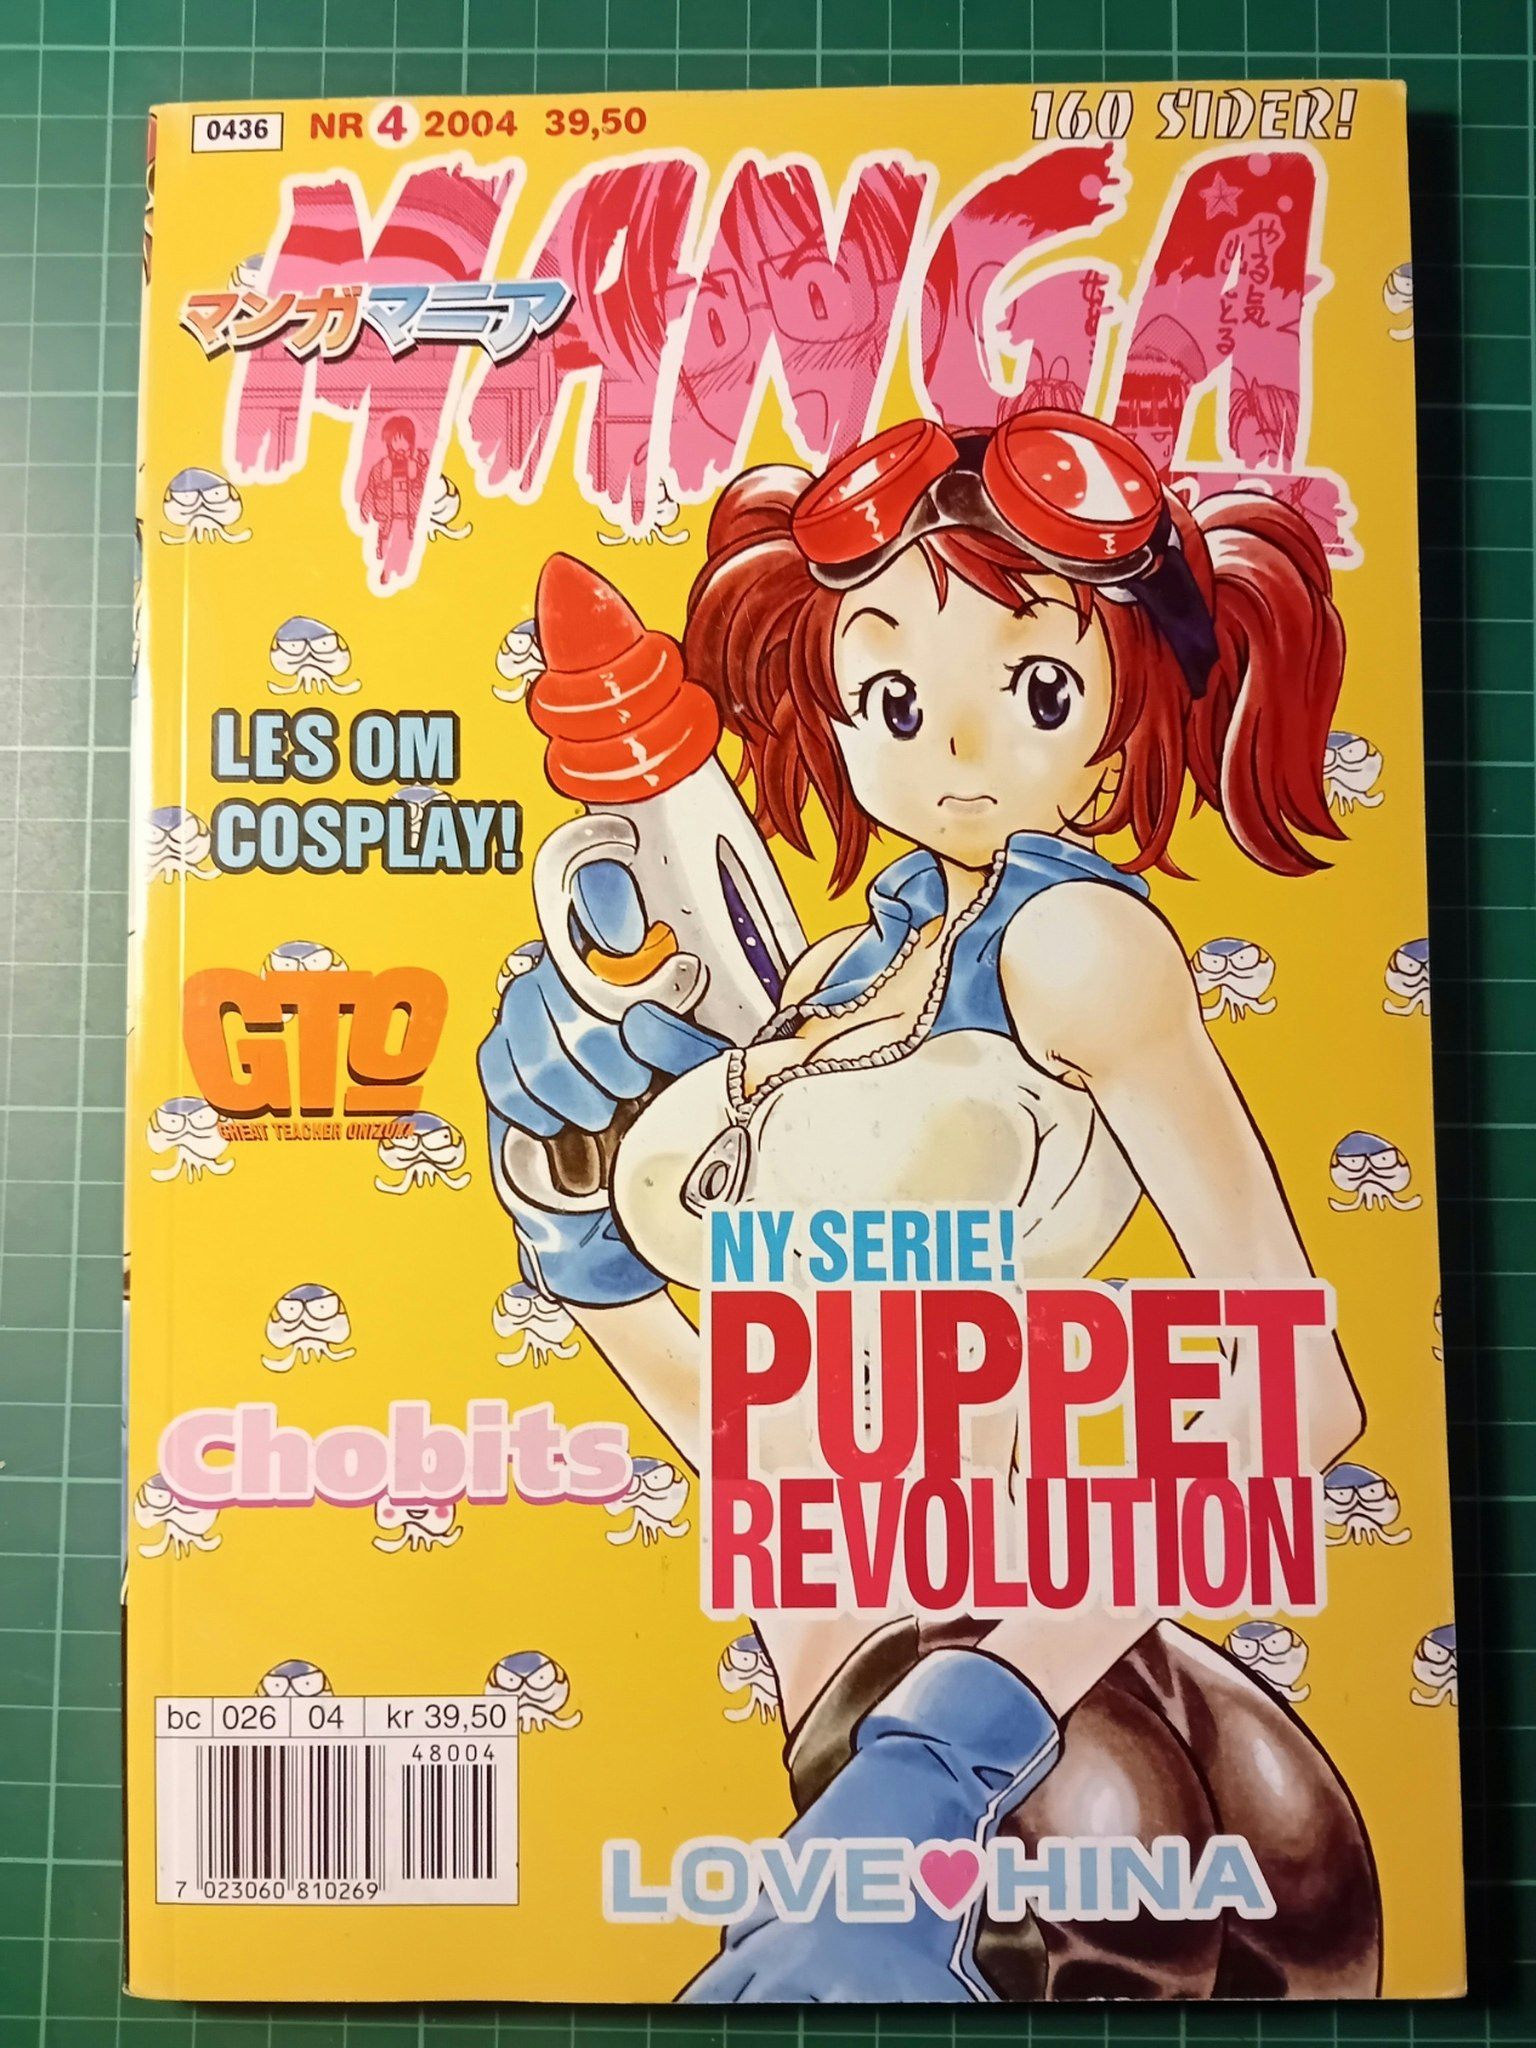 Manga Mania 2004 - 04